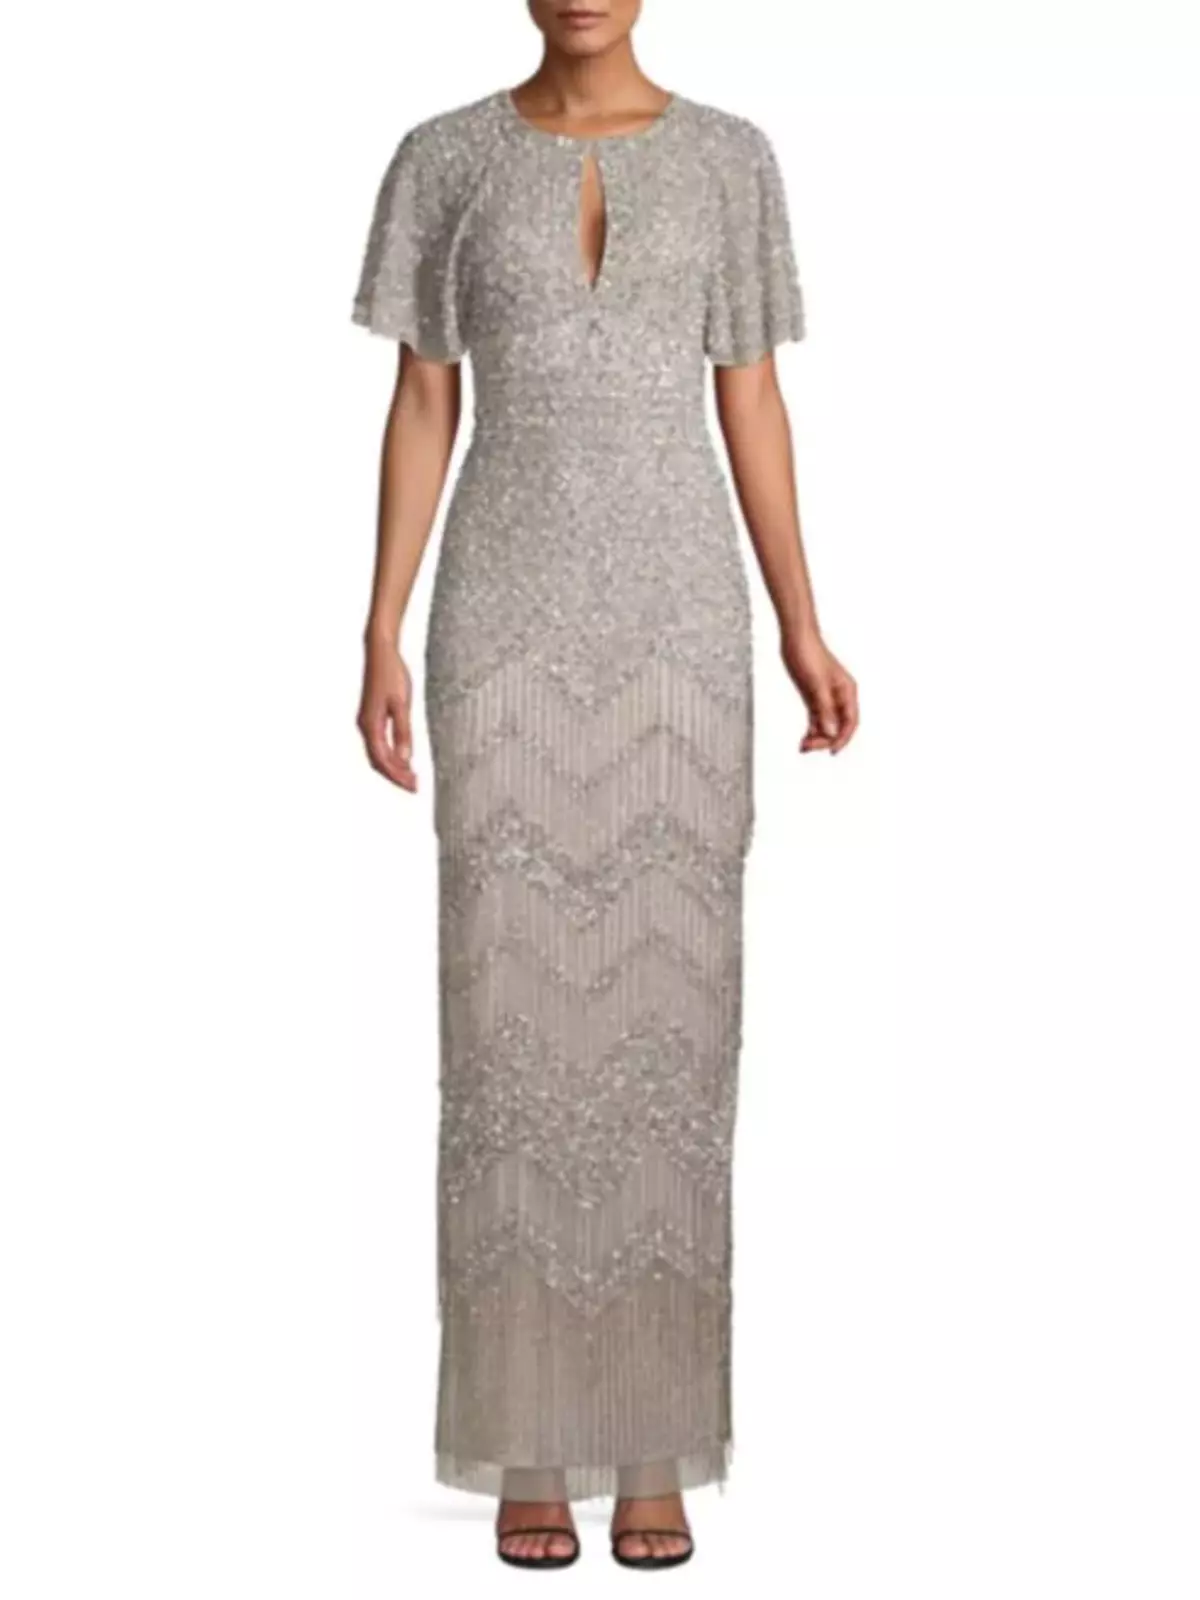 Lana del Rey compró un vestido para Grammy en el centro comercial por solo 600 dólares. 105466_3